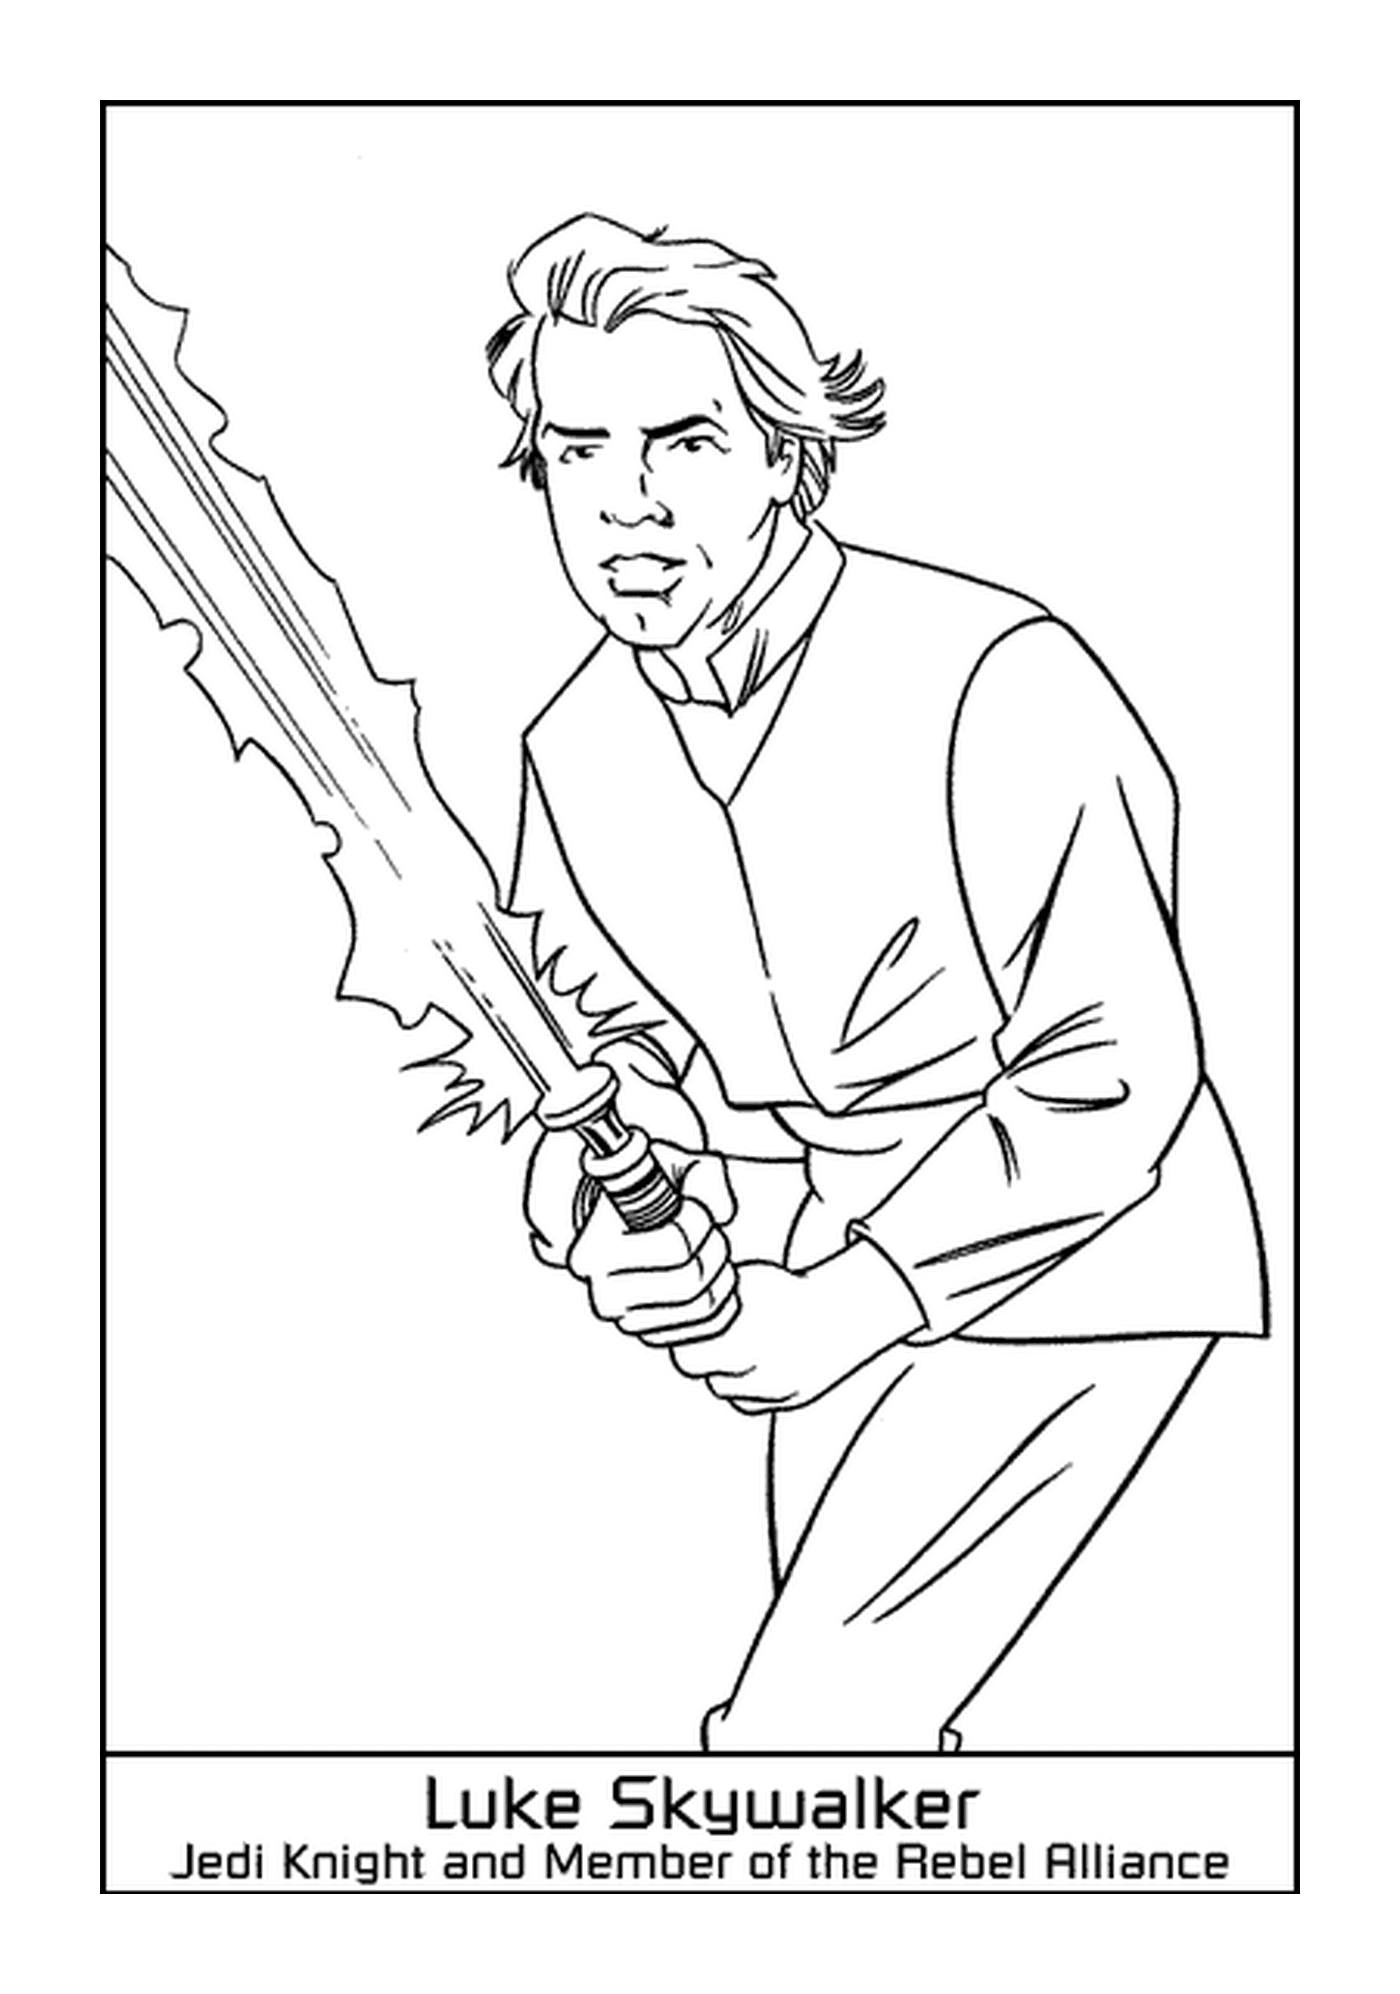  Luke Skywalker, l'eroe 